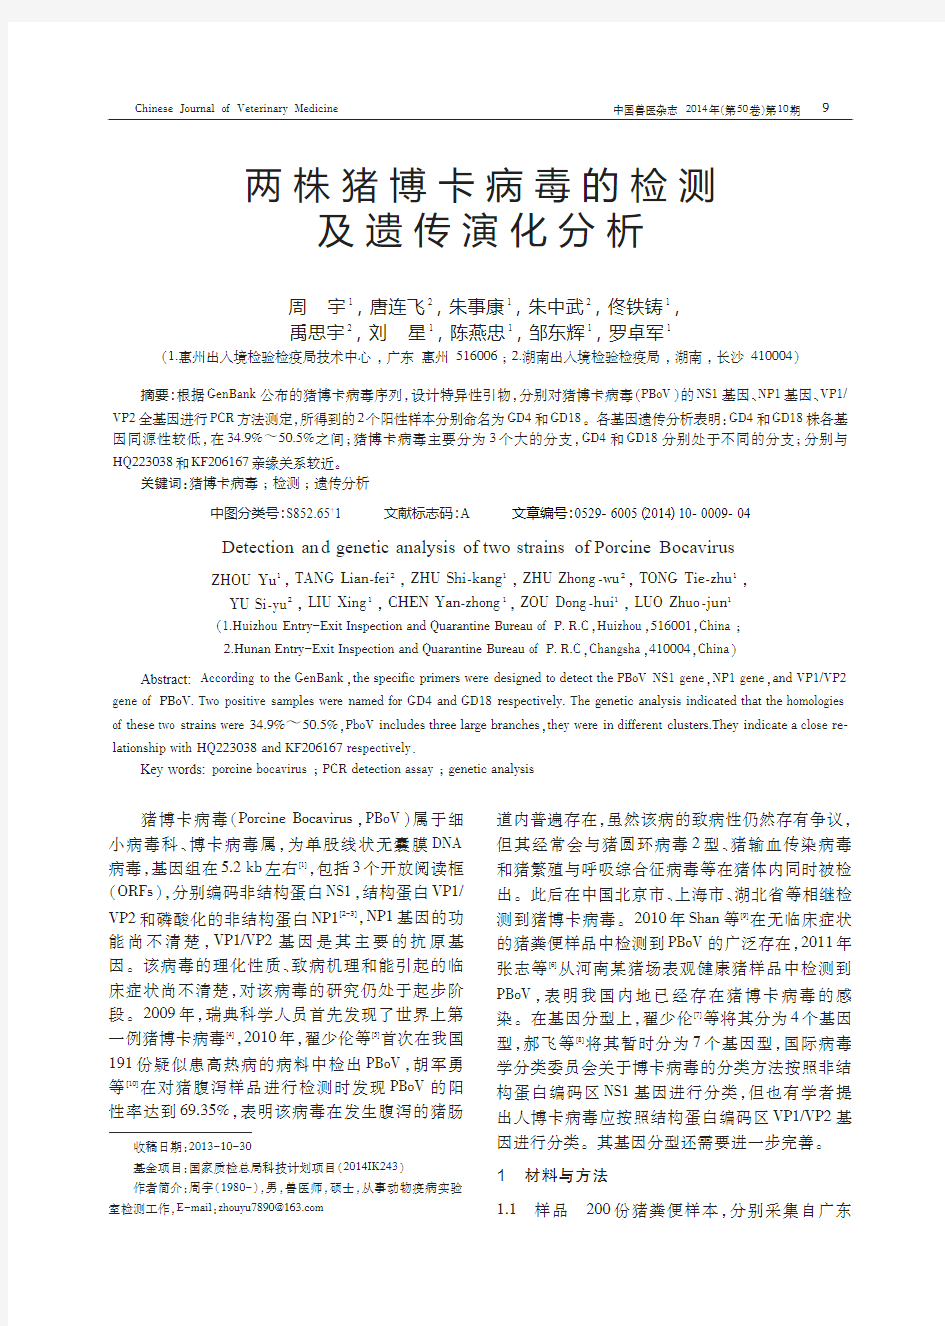 1410 两株博卡病毒的检测及遗传演化分析 中国兽医杂志